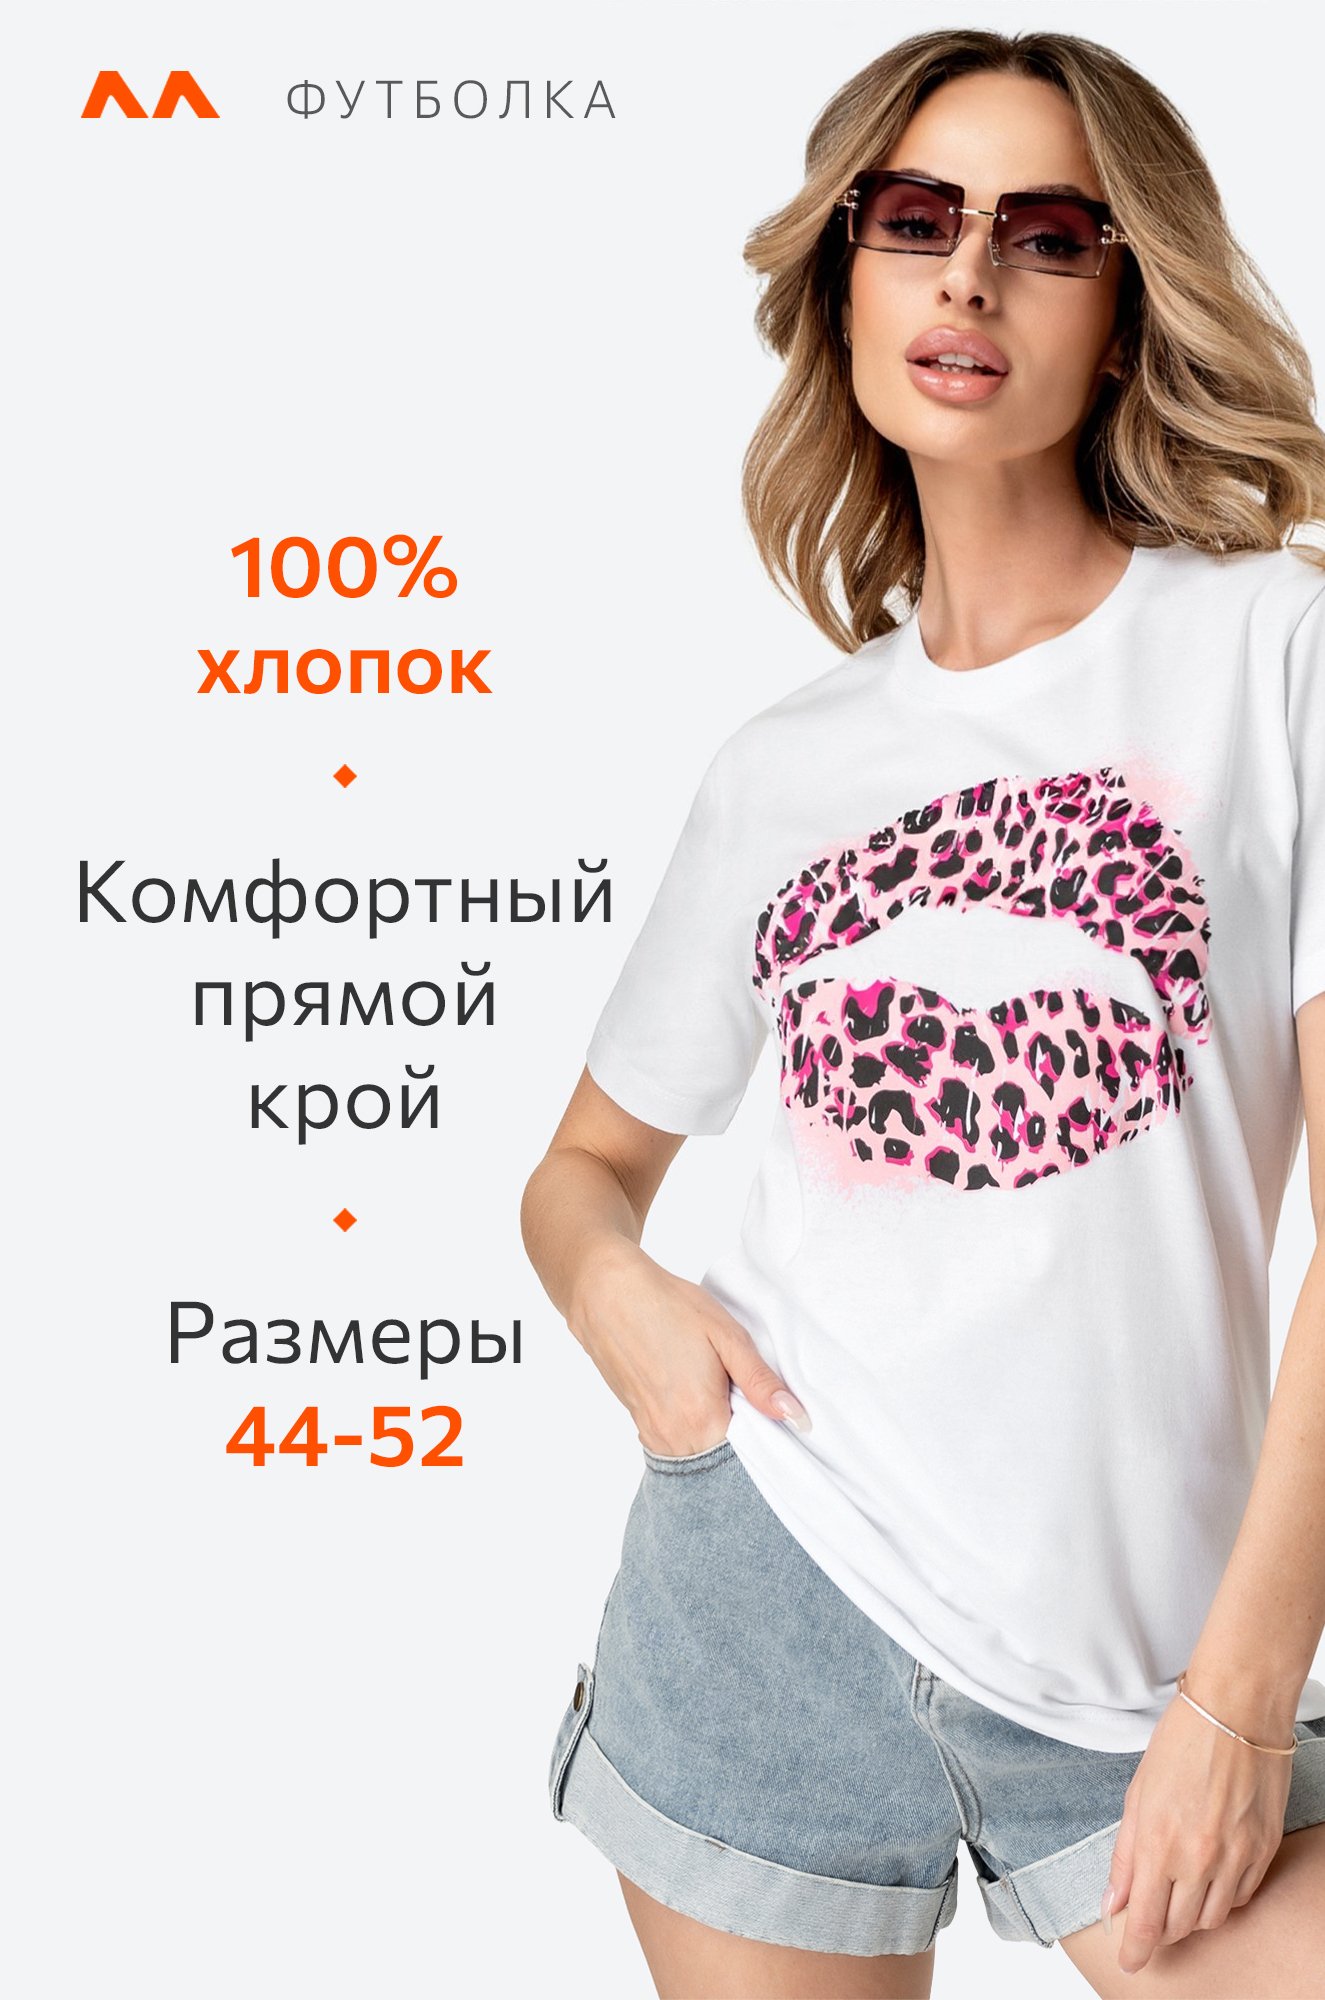 Женская хлопковая футболка Happy Fox